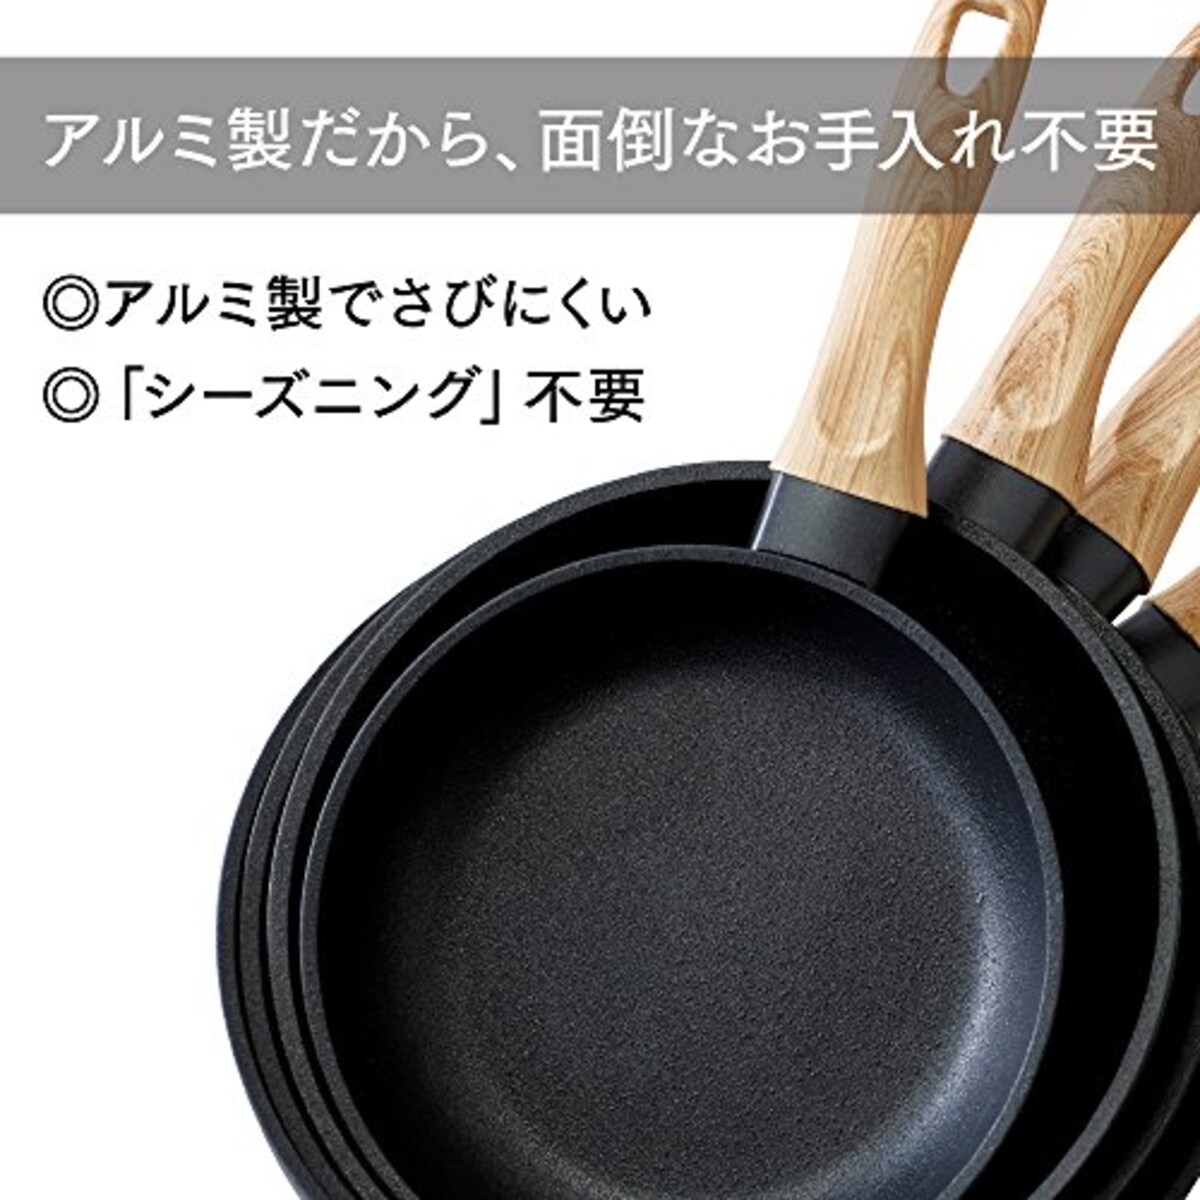  アイリスオーヤマ IH 対応 フライパン 20cm スキレットコートパン ブラック SKL-20IH画像8 